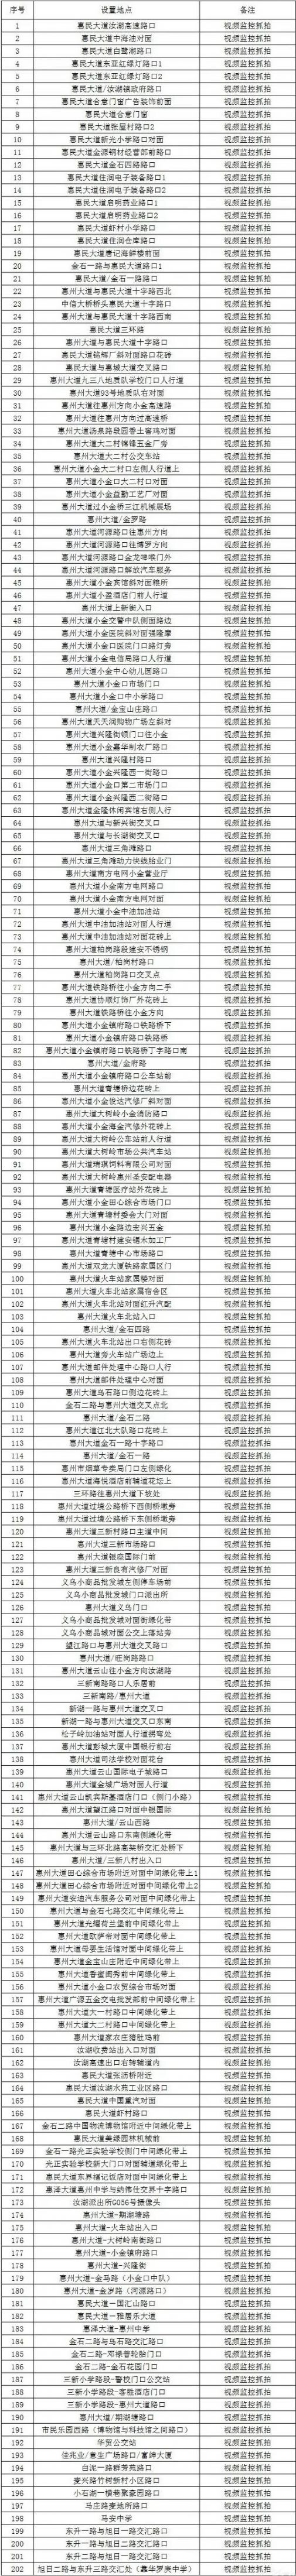 惠州近期将新增调整202个电子警察（附具体点位分布）